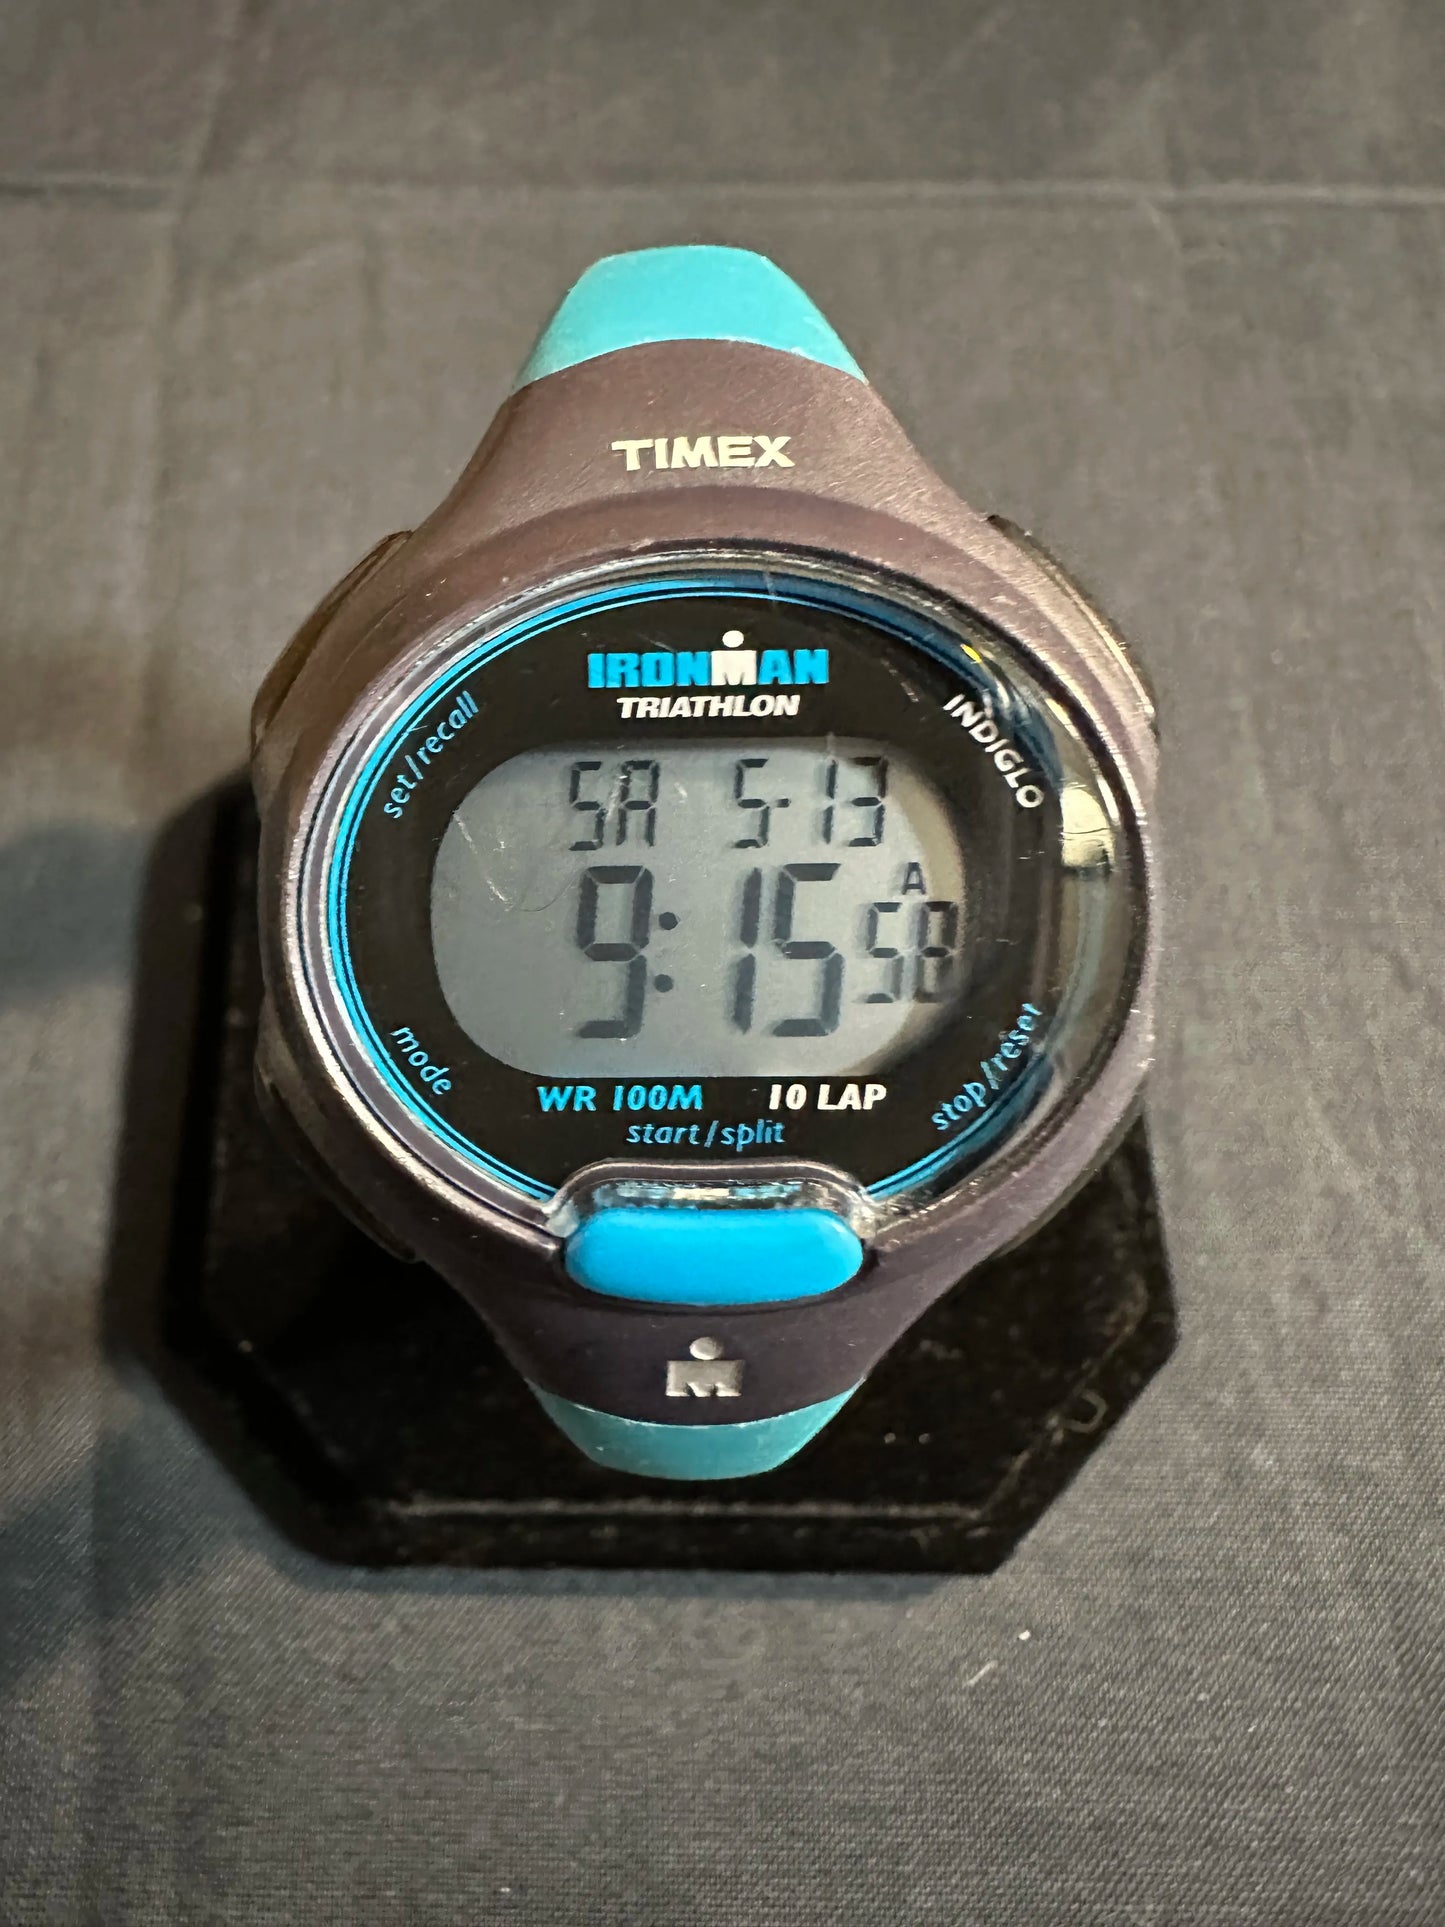 Timex Ladies' Triathlon Watch Blue Band 855 - Indiglo